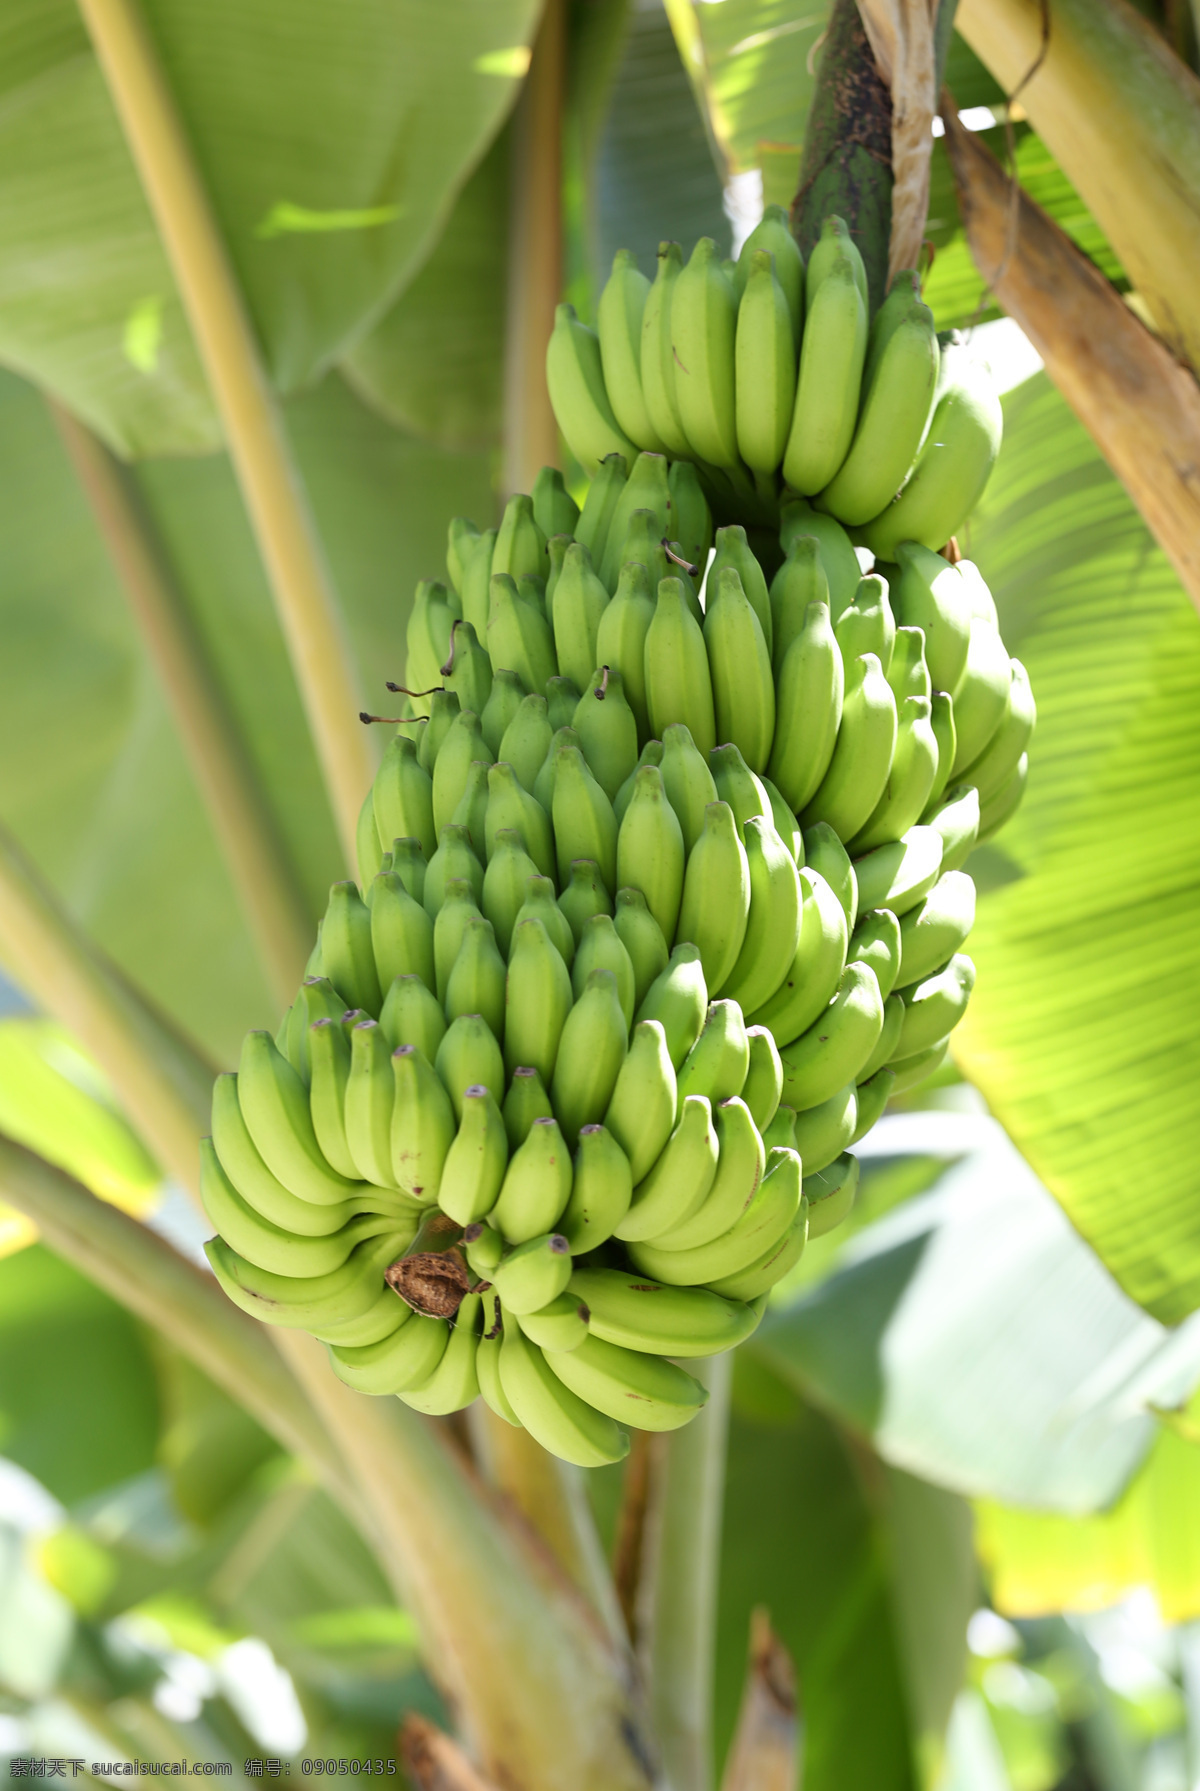 叶 树 香蕉 食物 自然 背景 香蕉树 绿香蕉 生香蕉 水果树 新鲜香蕉 热带水果 热带植物 广东芝麻蕉 田园风光 生物世界 水果